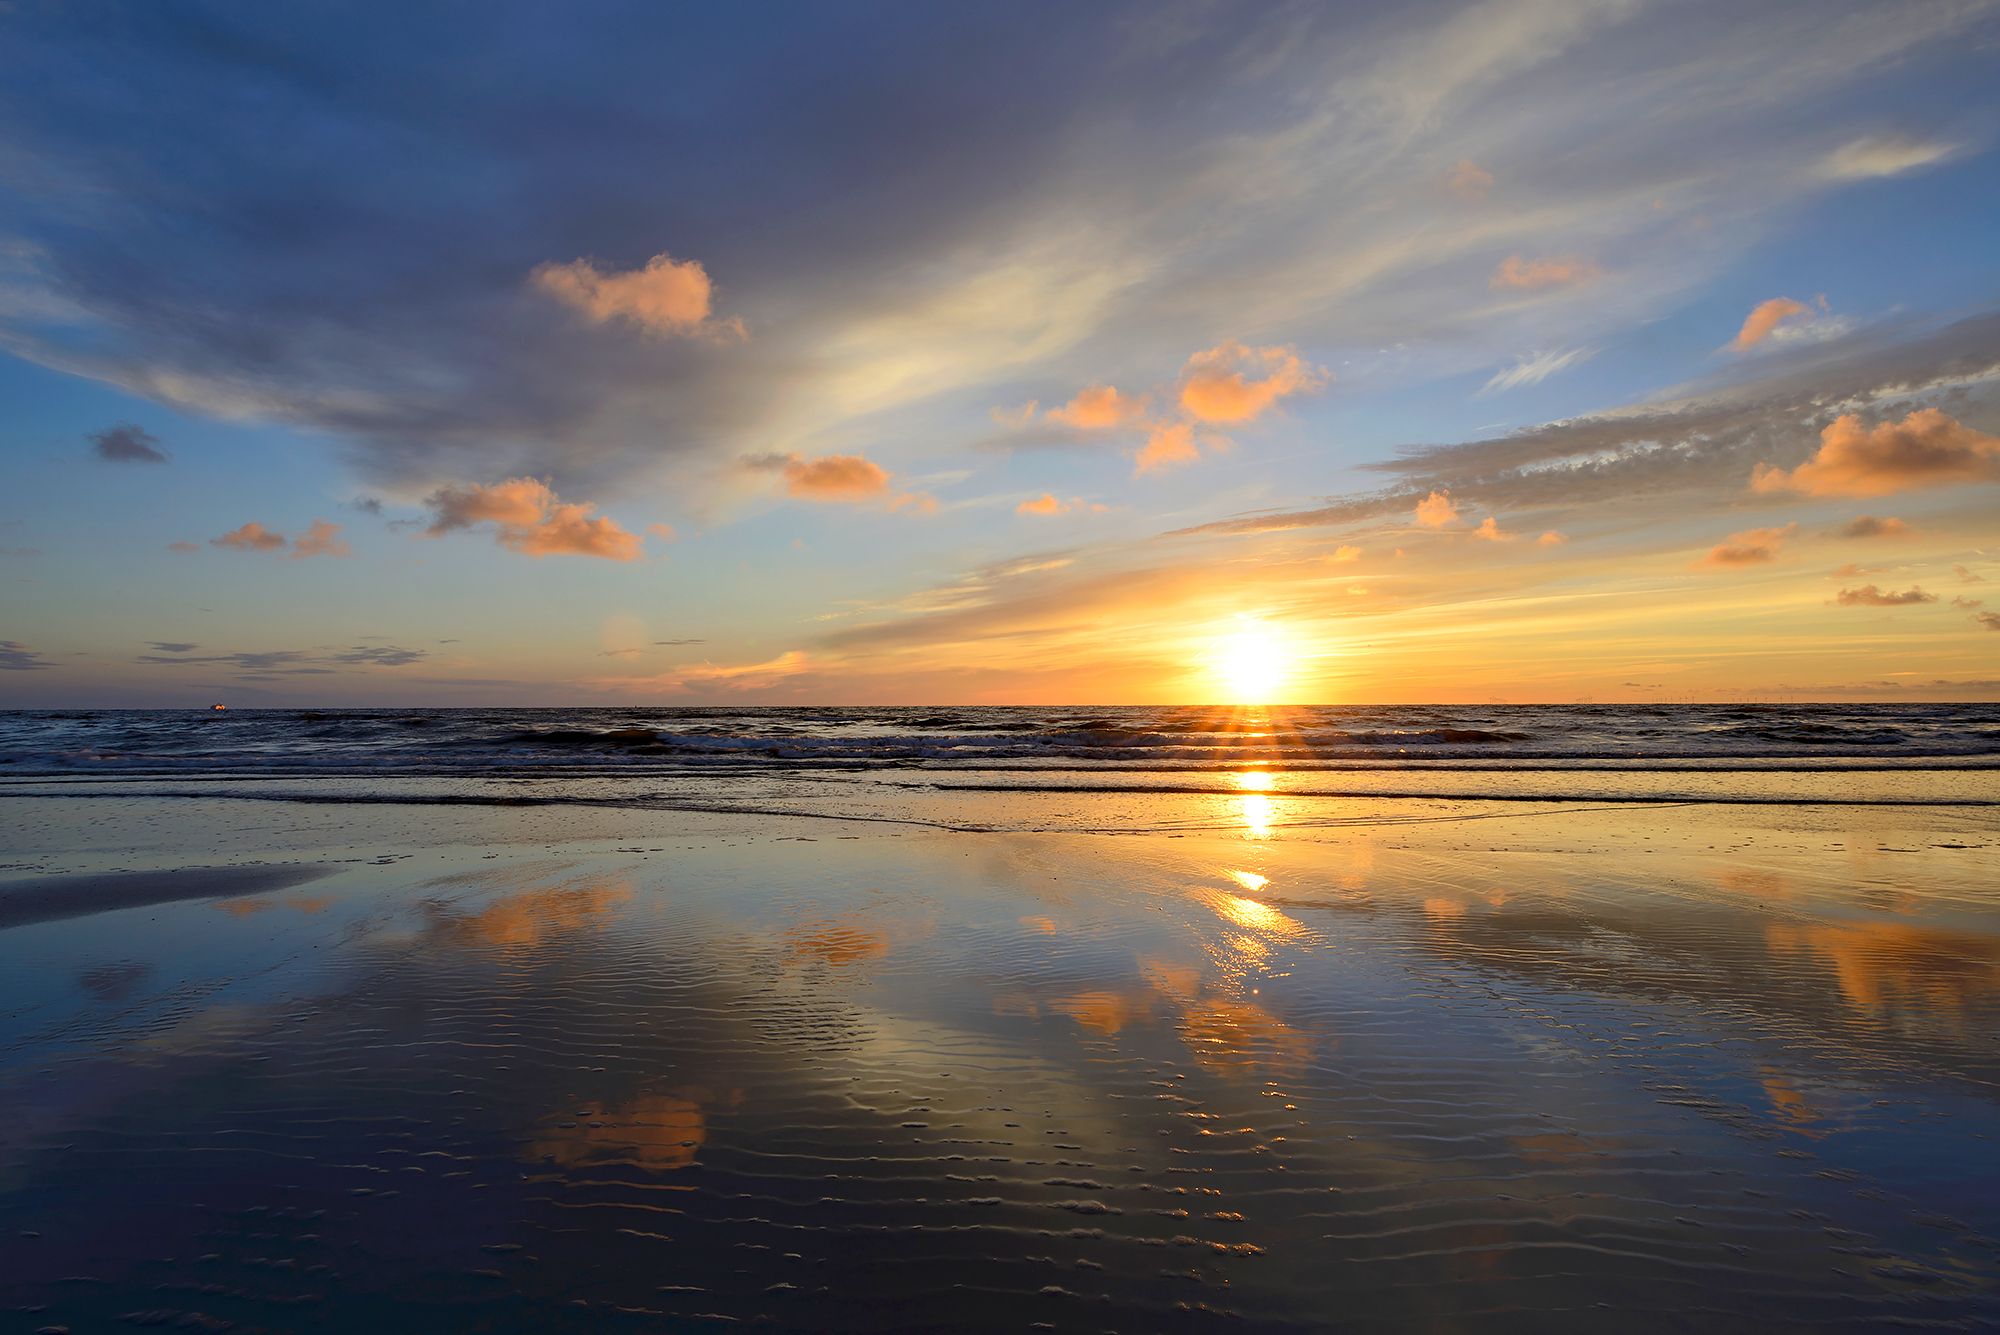 Warme gloed van zonsondergang weerspiegelt in het ondiepe zeewater langs de vloedlijn op het strand van Wijk aan Zee.